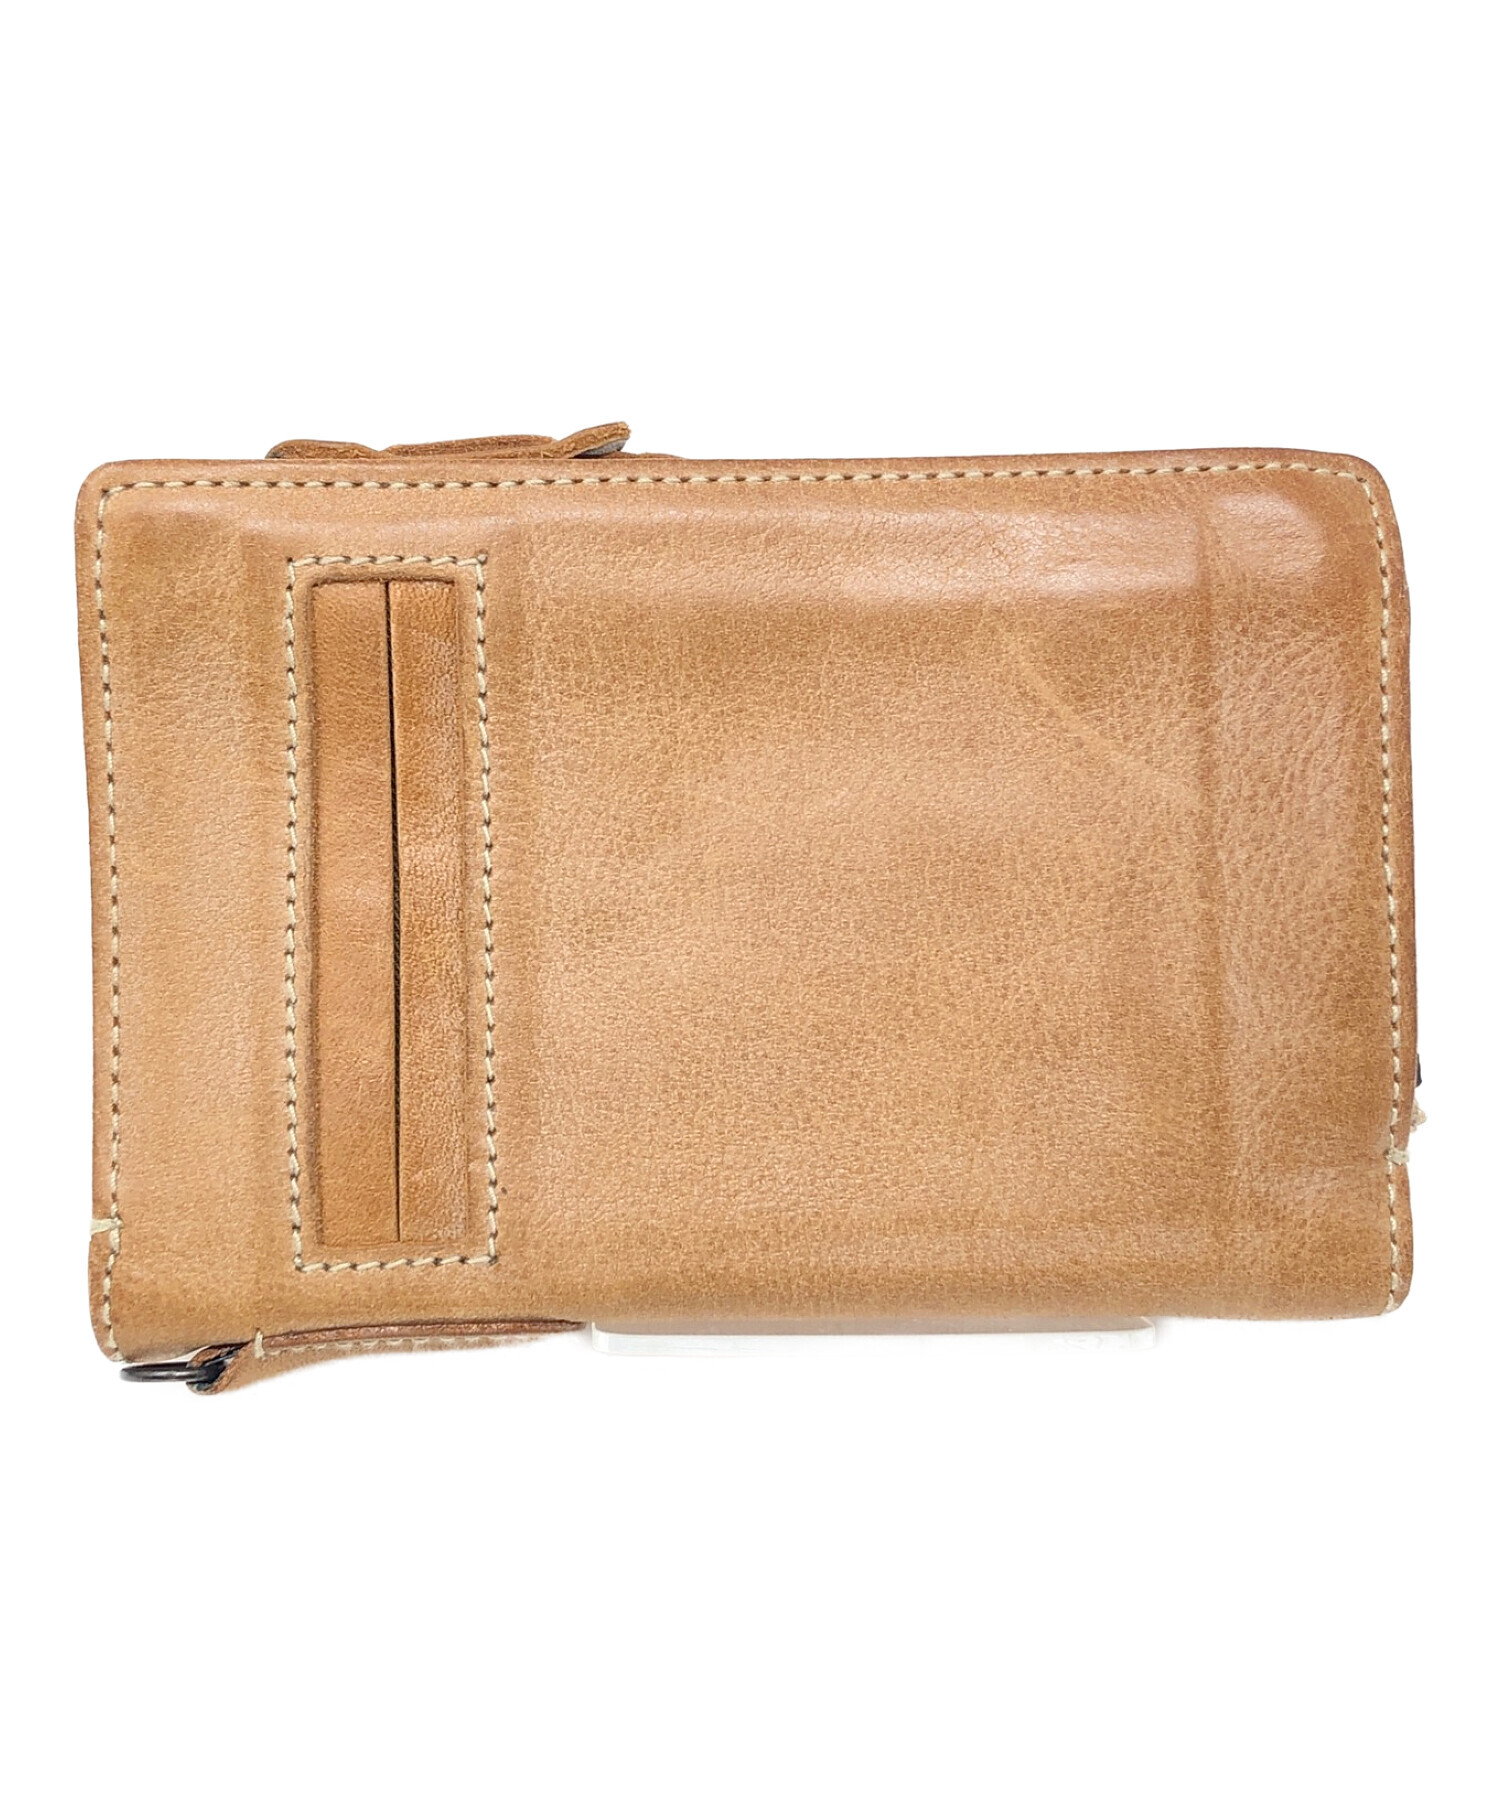 corbo (コルボ) 2つ折り財布 ブラウン サイズ:実寸サイズにてご確認ください。